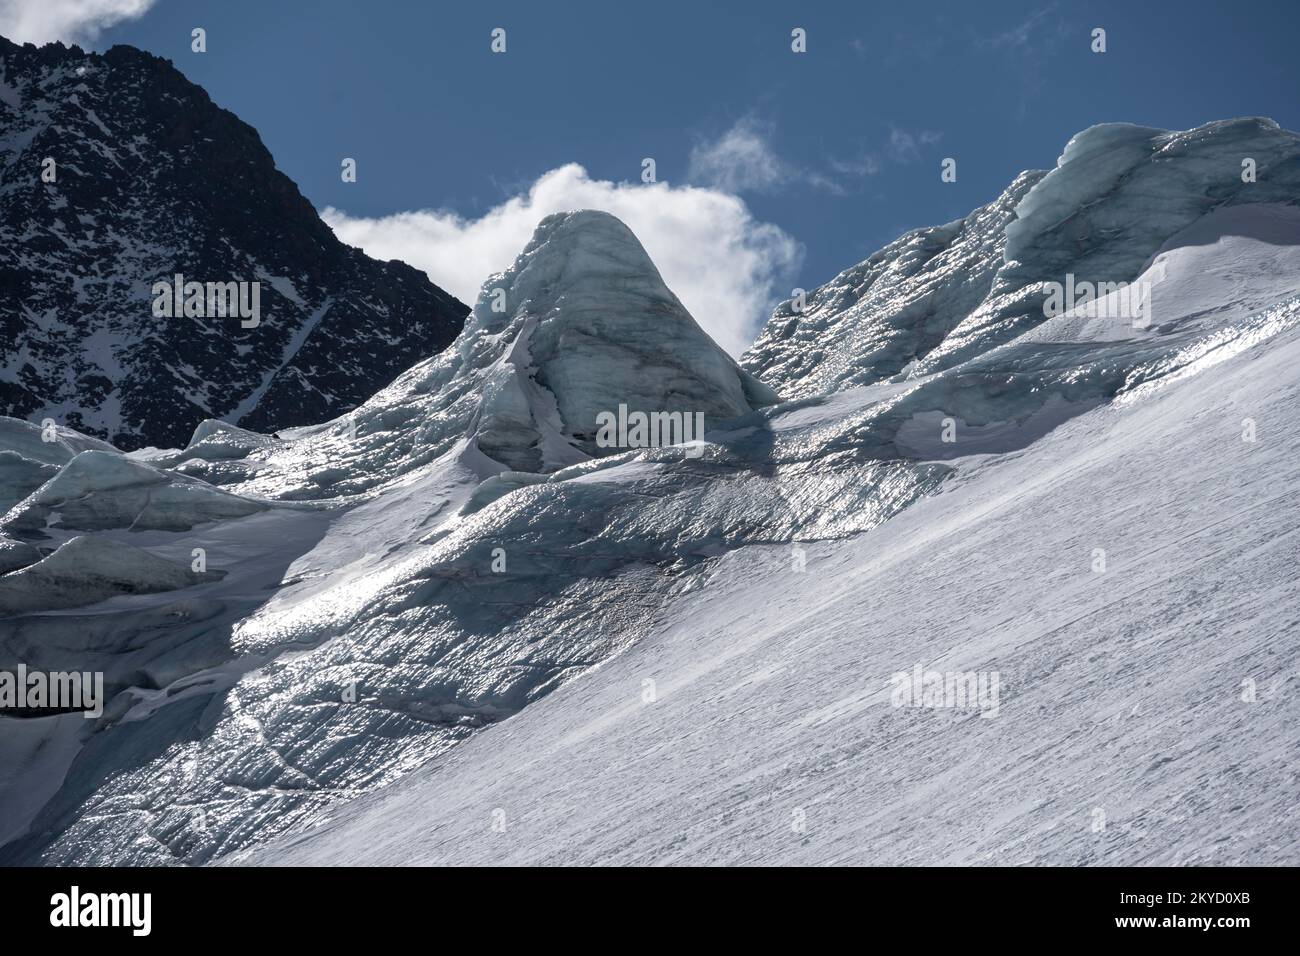 Alpeiner Ferner, ice on the glacier in winter, Neustift im Stubai Valley, Tyrol, Austria Stock Photo